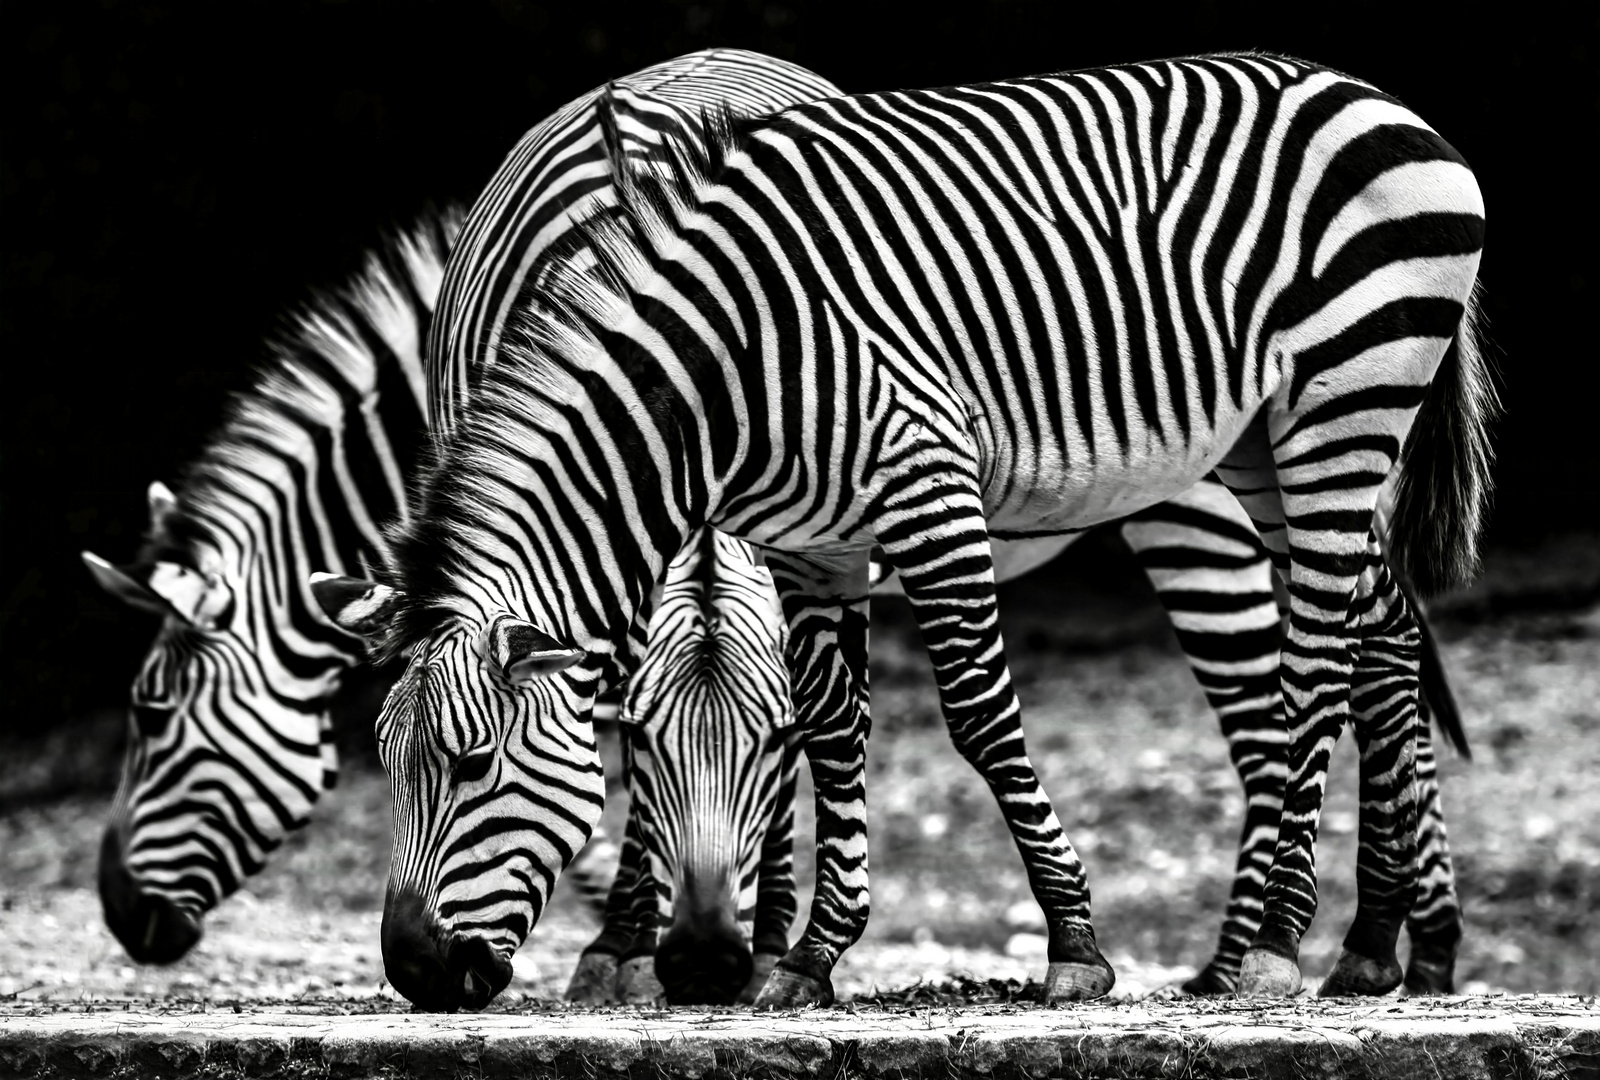 Zebras   